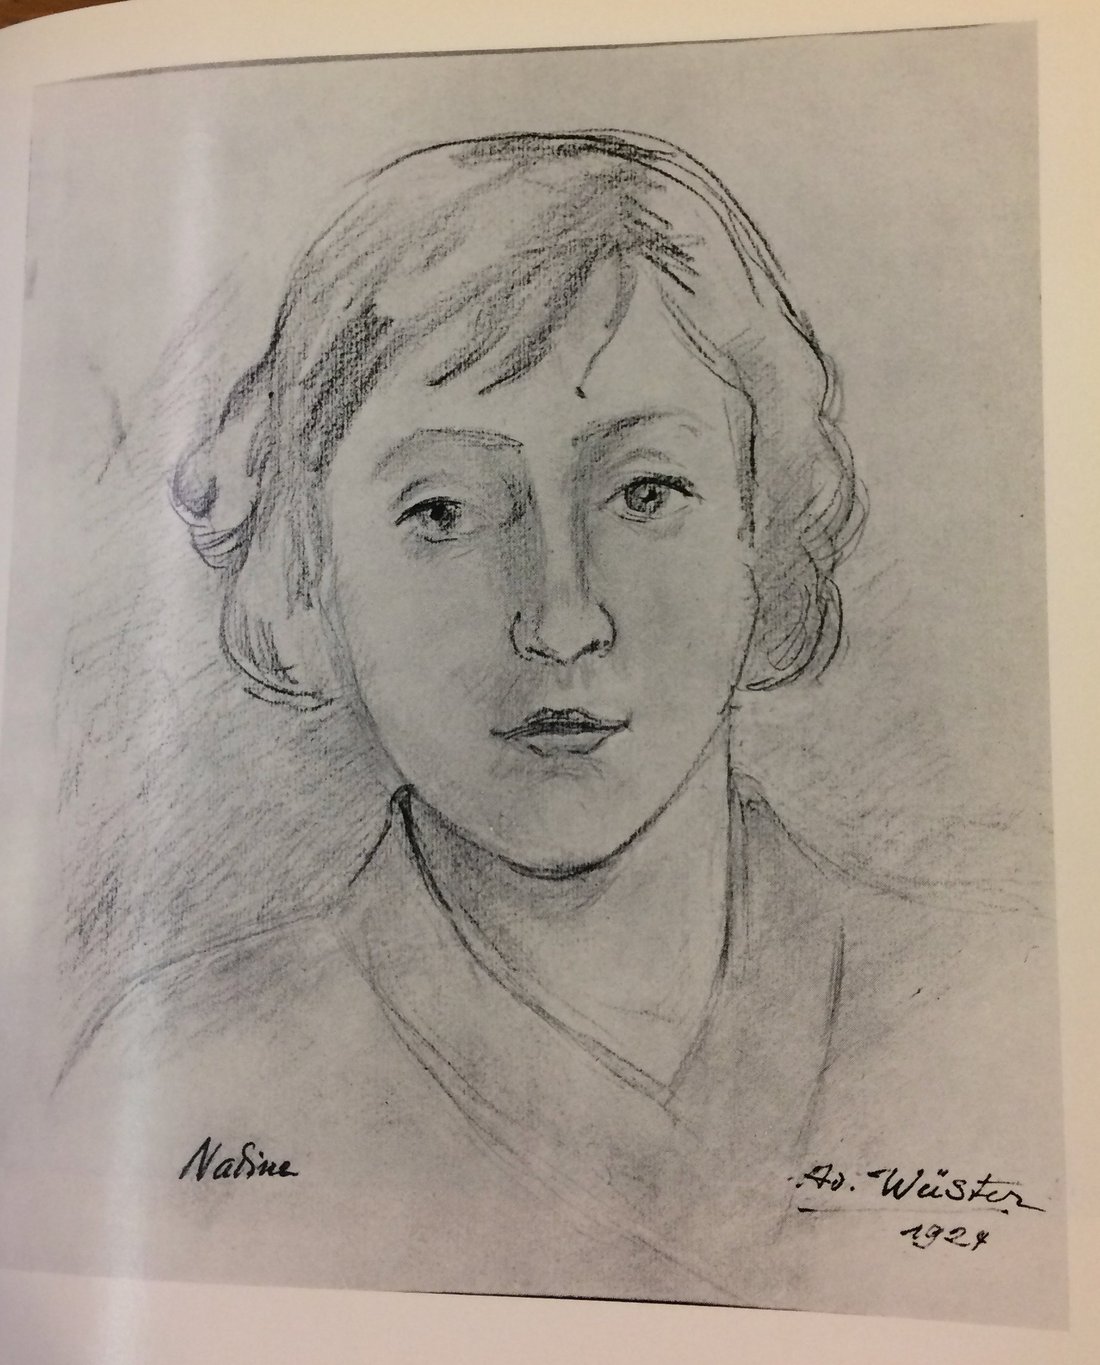 Nadine Wüster, dessin par Adolf Wüster, 1924. Source : Catalogue d'exposition de la Galerie Interkunst à Munich, Claudius, 1969.